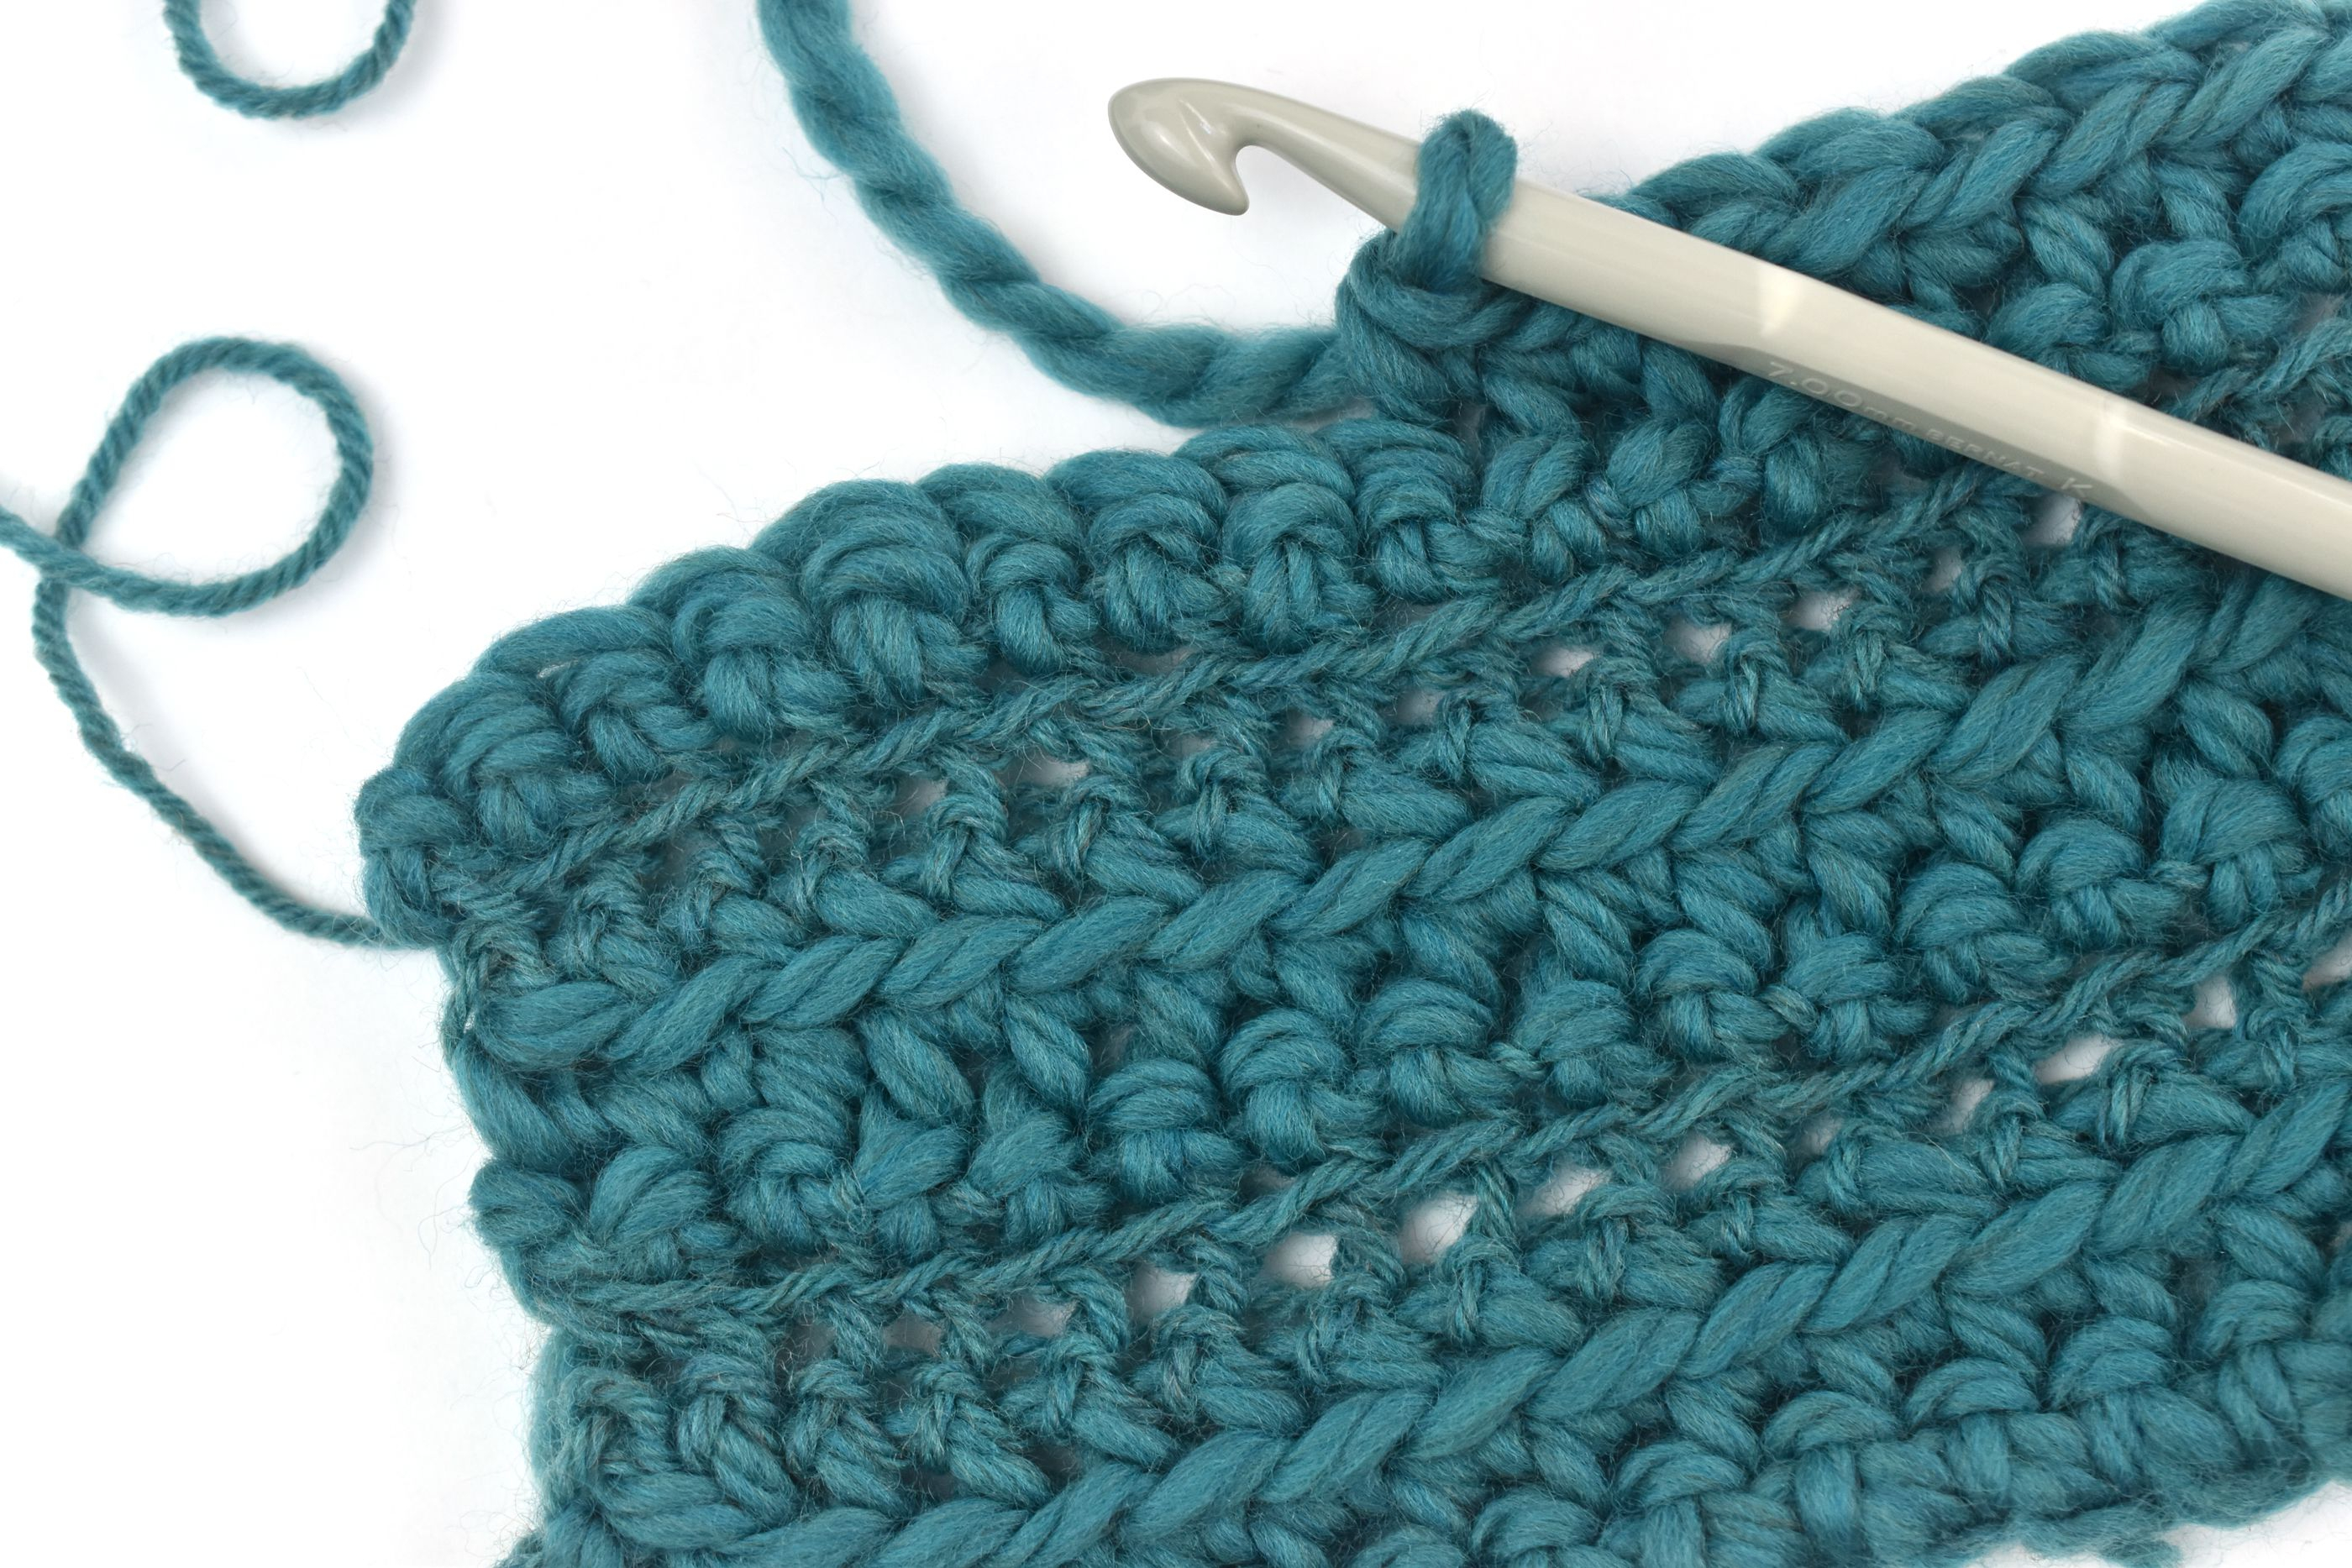 Unique Crochet Patterns 10 Most Popular Crochet Stitches